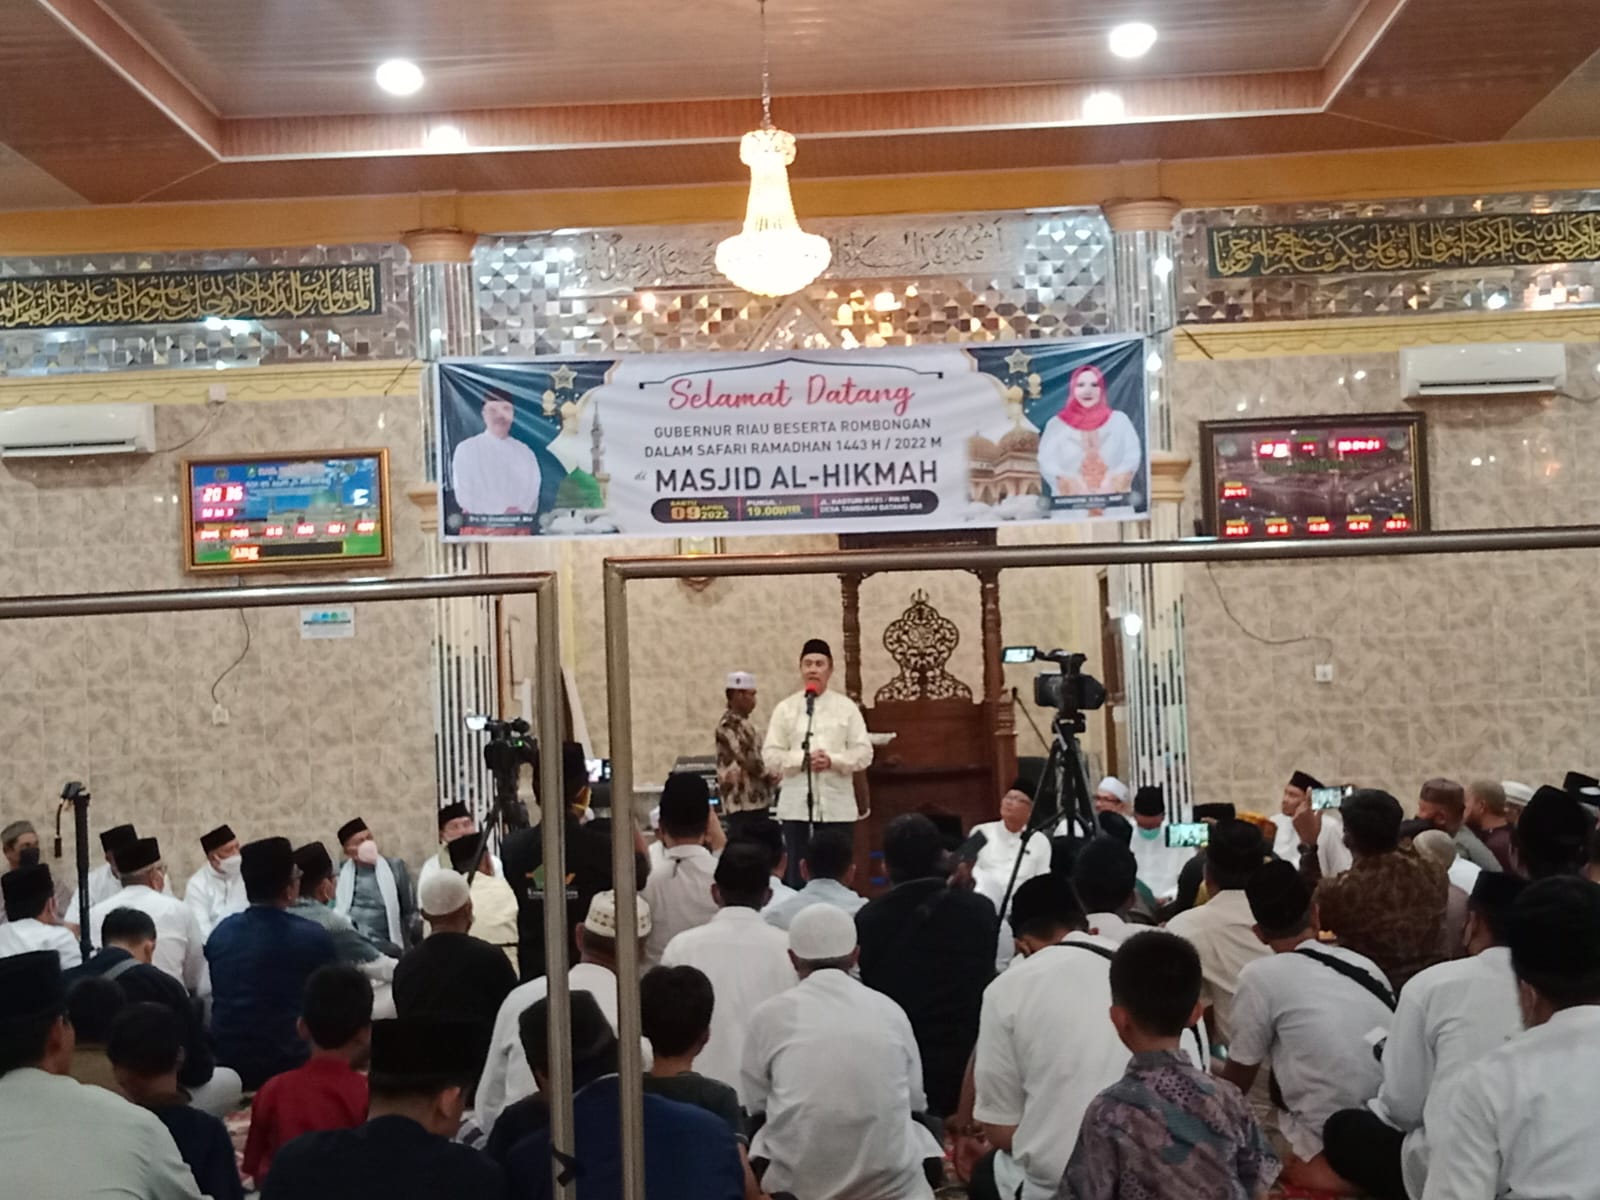 Antusias Masyarakat Hadiri Safari Ramadan Gubernur Riau di Bengkalis